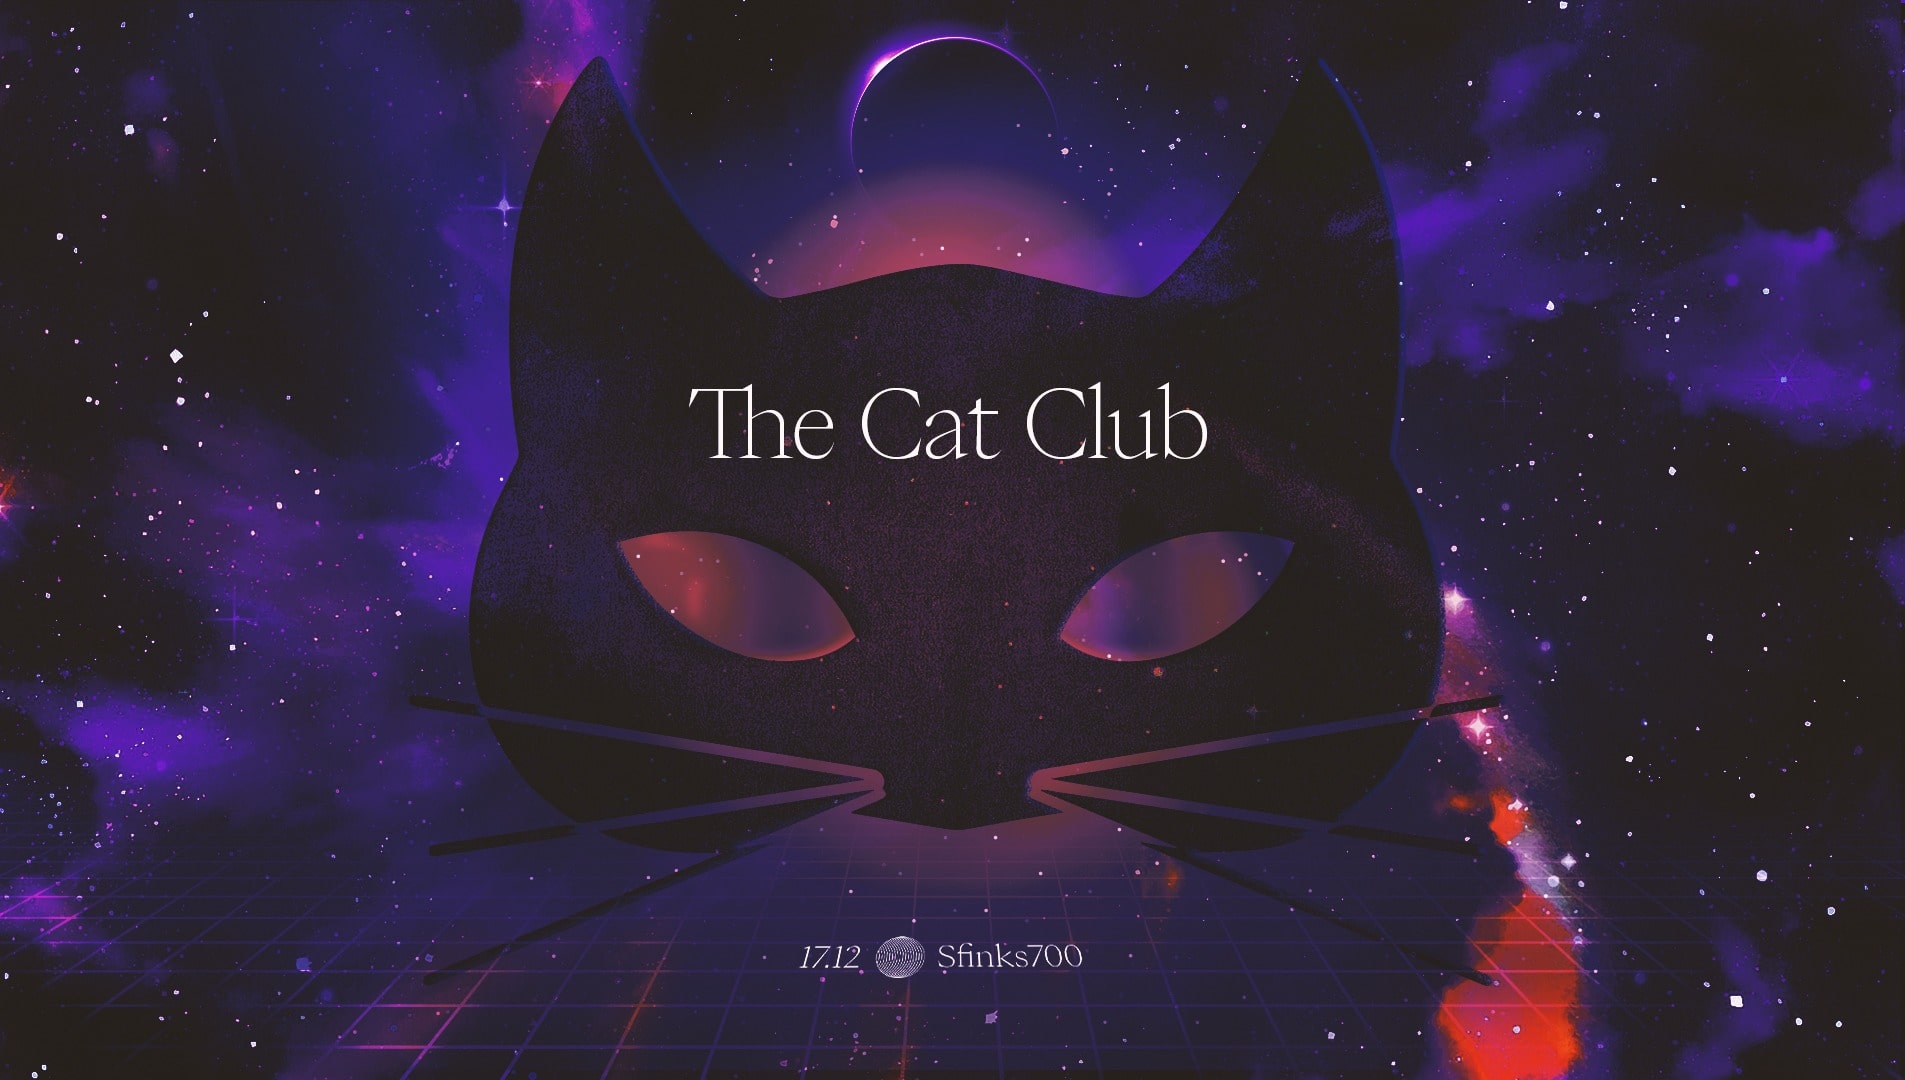 The Cat Club x Sfinks700